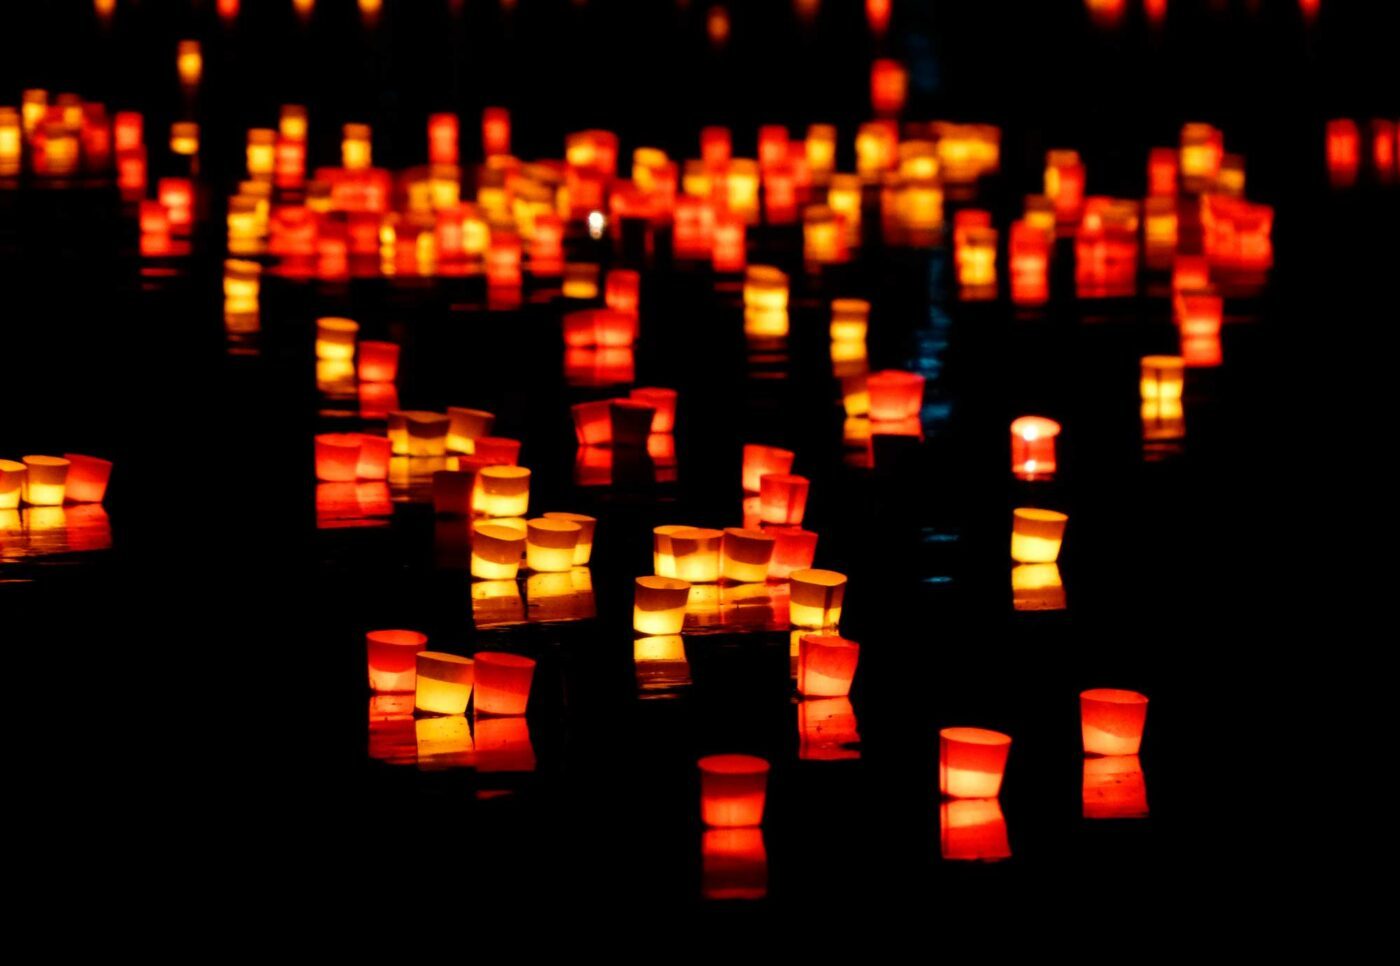 Für jeden und jede der über 13.000 Coronatoten in Österreich soll zumindest ein Licht leuchten, heißt es vonseiten der Veranstalter. Foto: pixabay